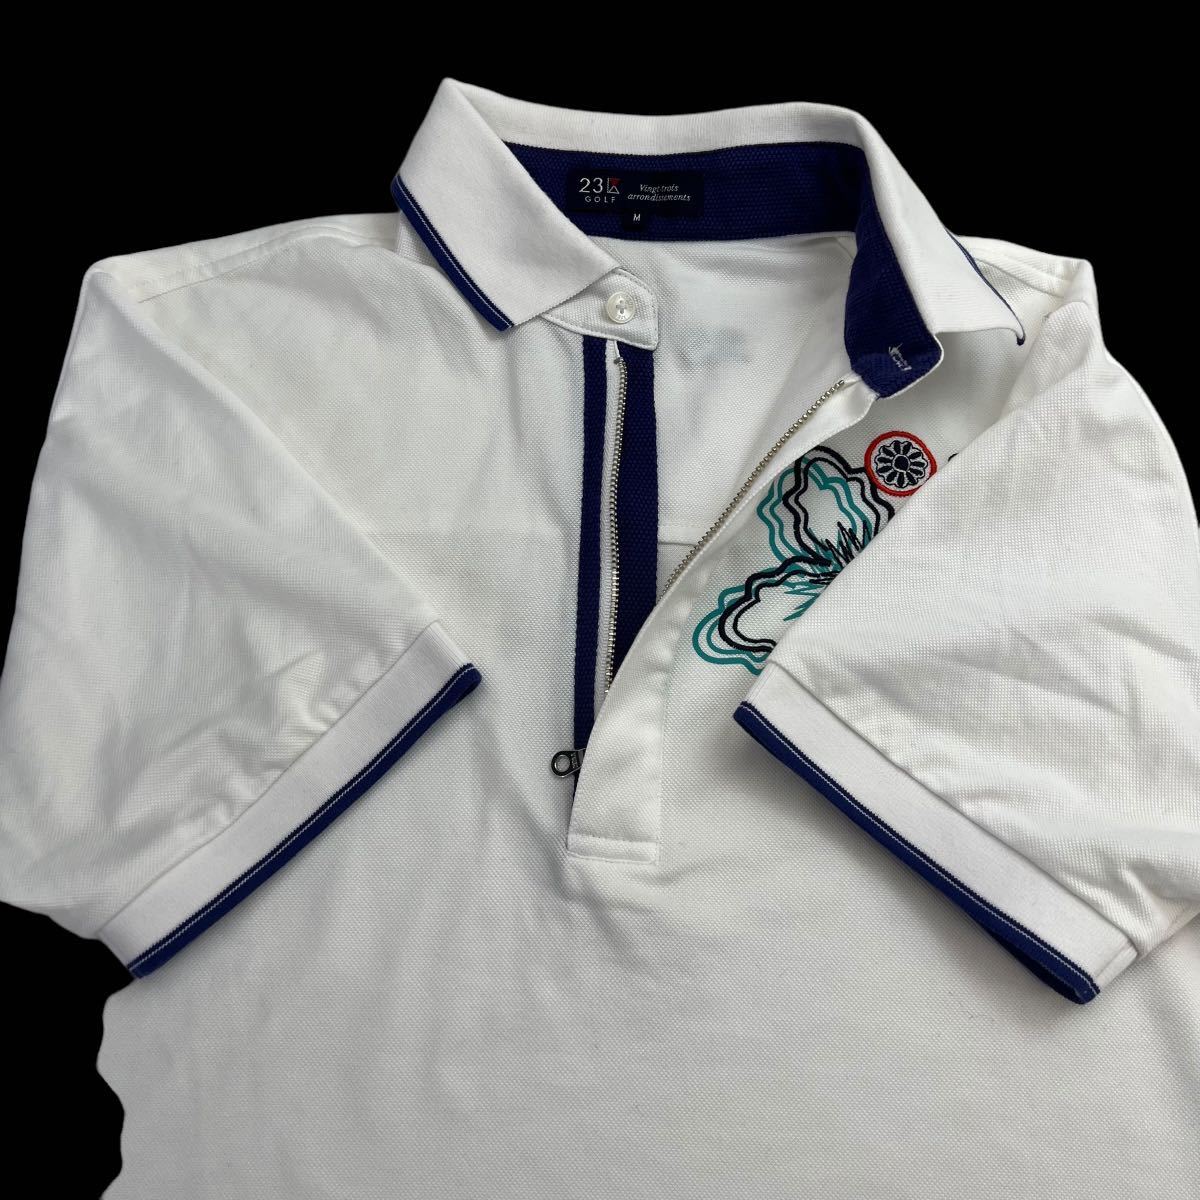 極美品 23区GOLF ニジュウサンク ゴルフウェア ゲームシャツ サイズM ホワイト 胸ロゴ 刺繍 オンワード樫山 ポロシャツ 人気 名作 A2463_画像5